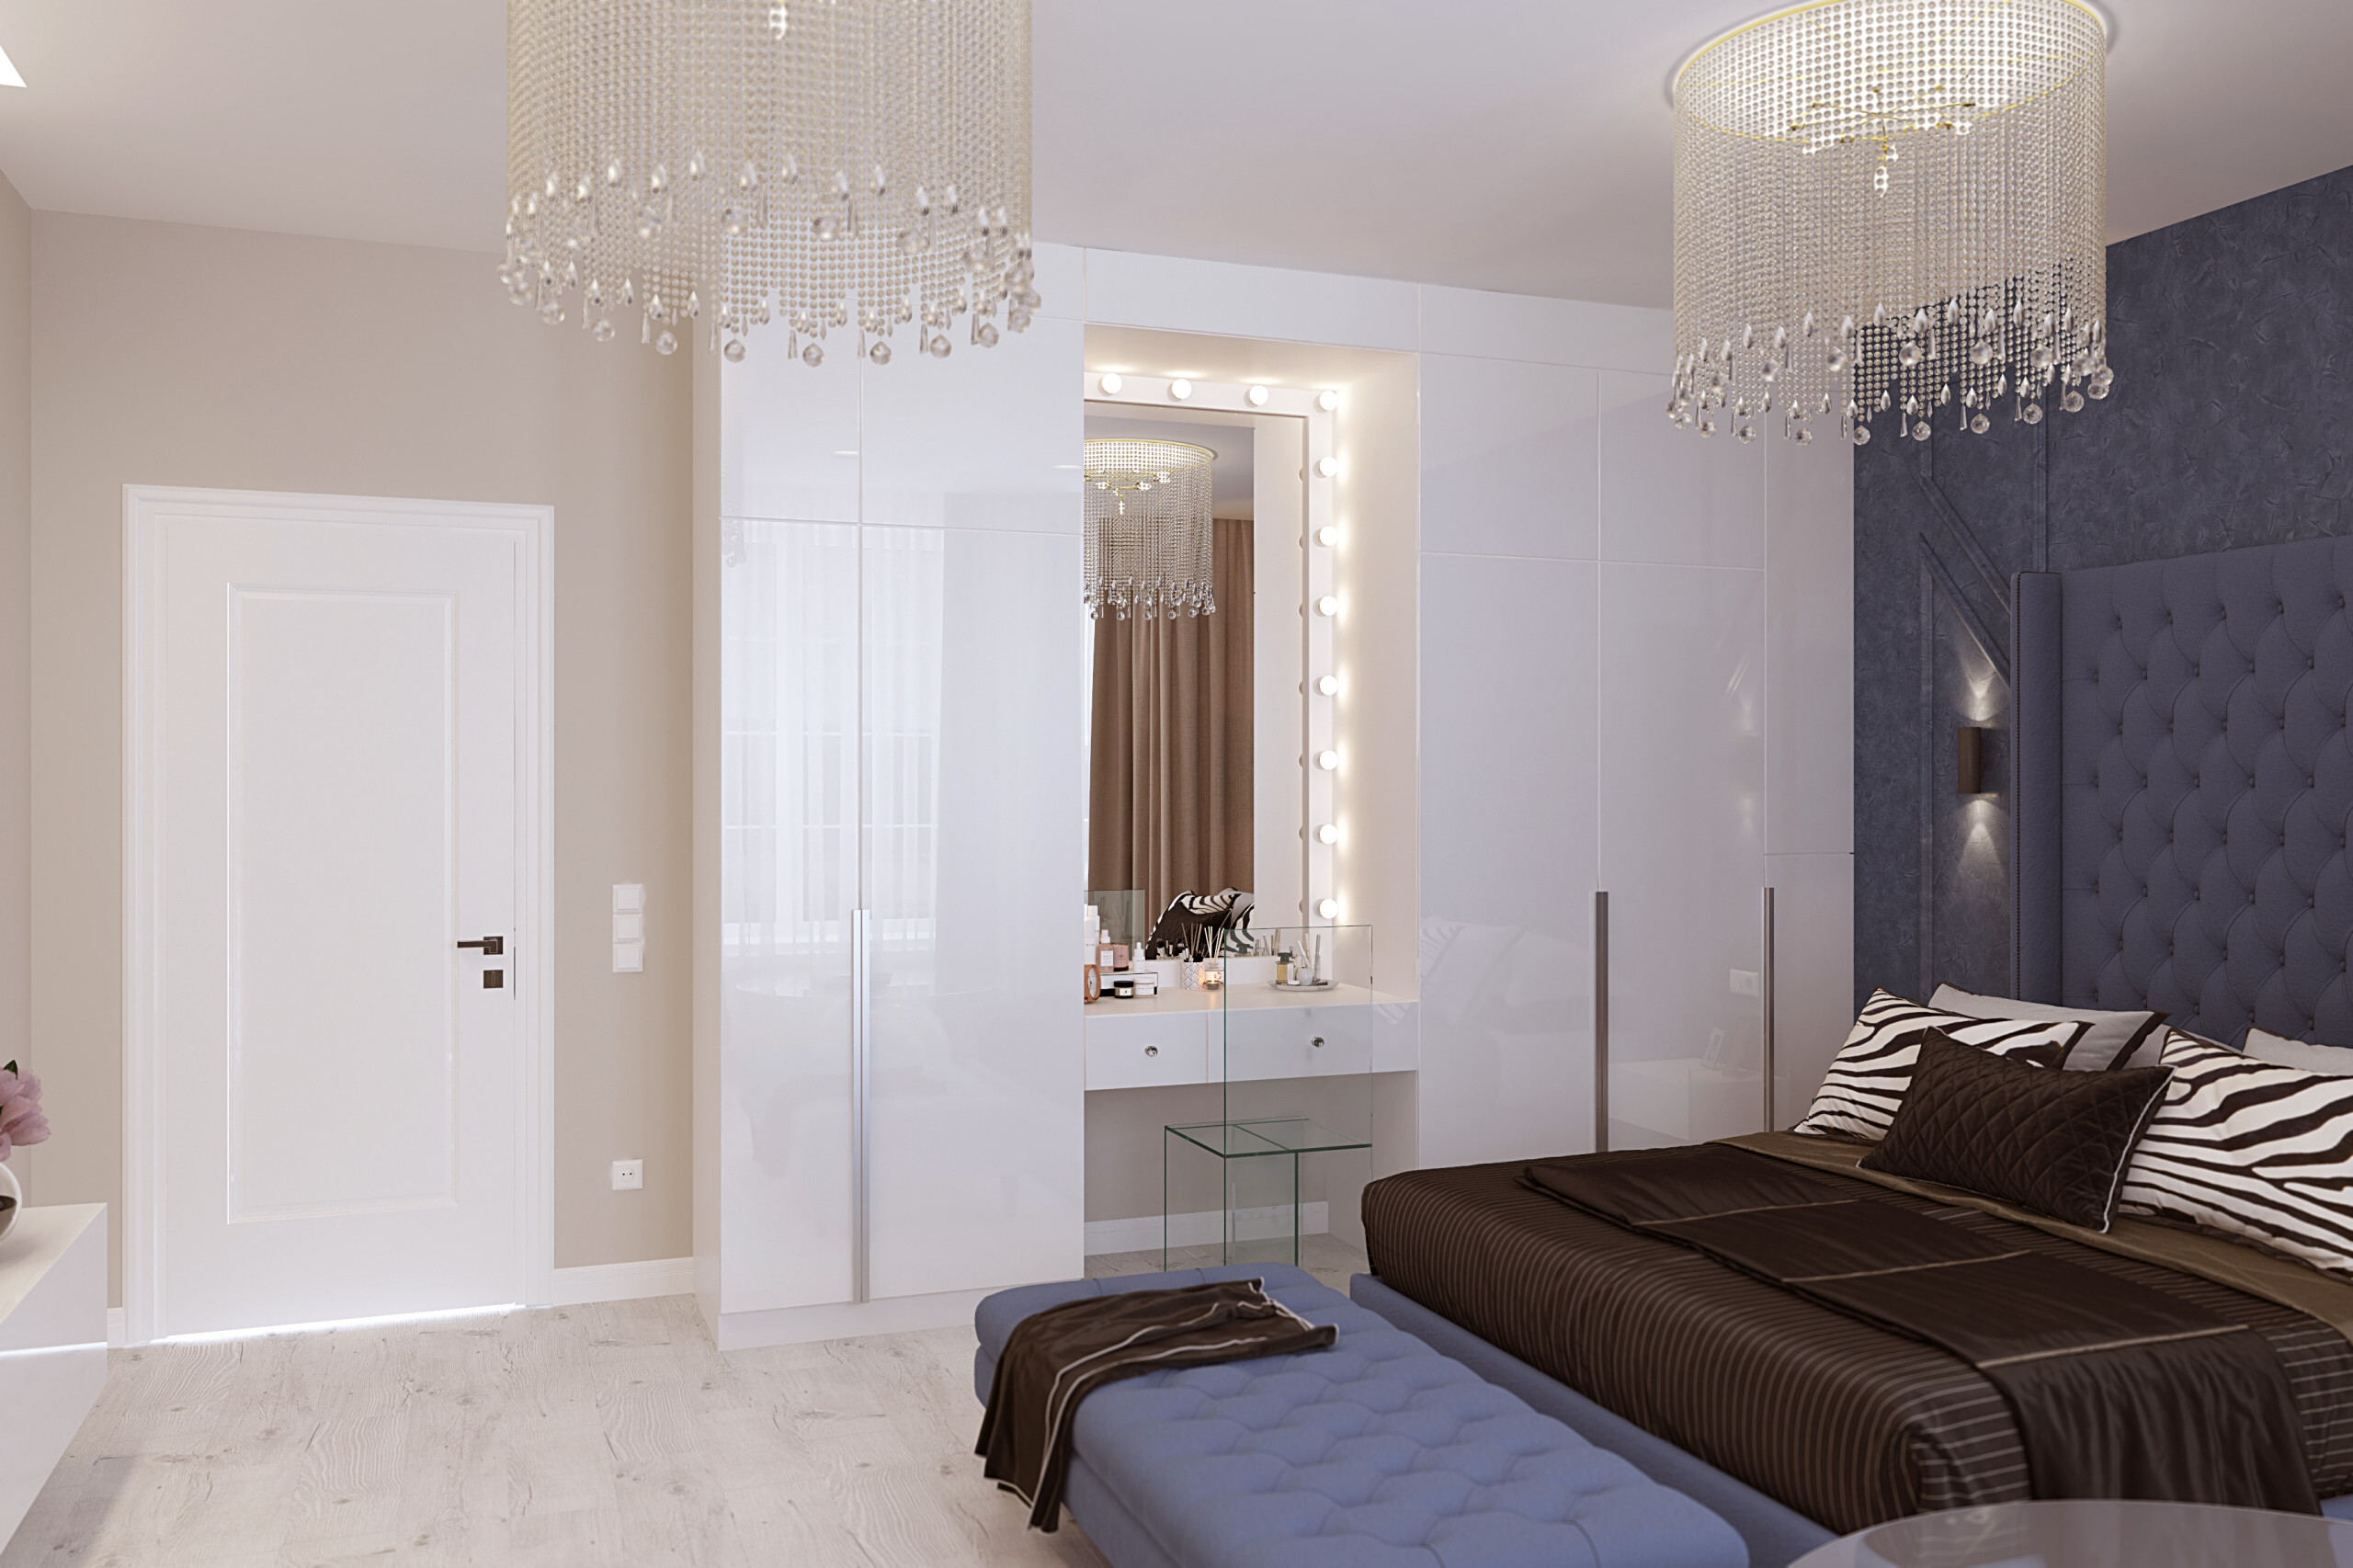 Интерьер спальни cветовыми линиями, зеркалом на двери, подсветкой настенной и подсветкой светодиодной